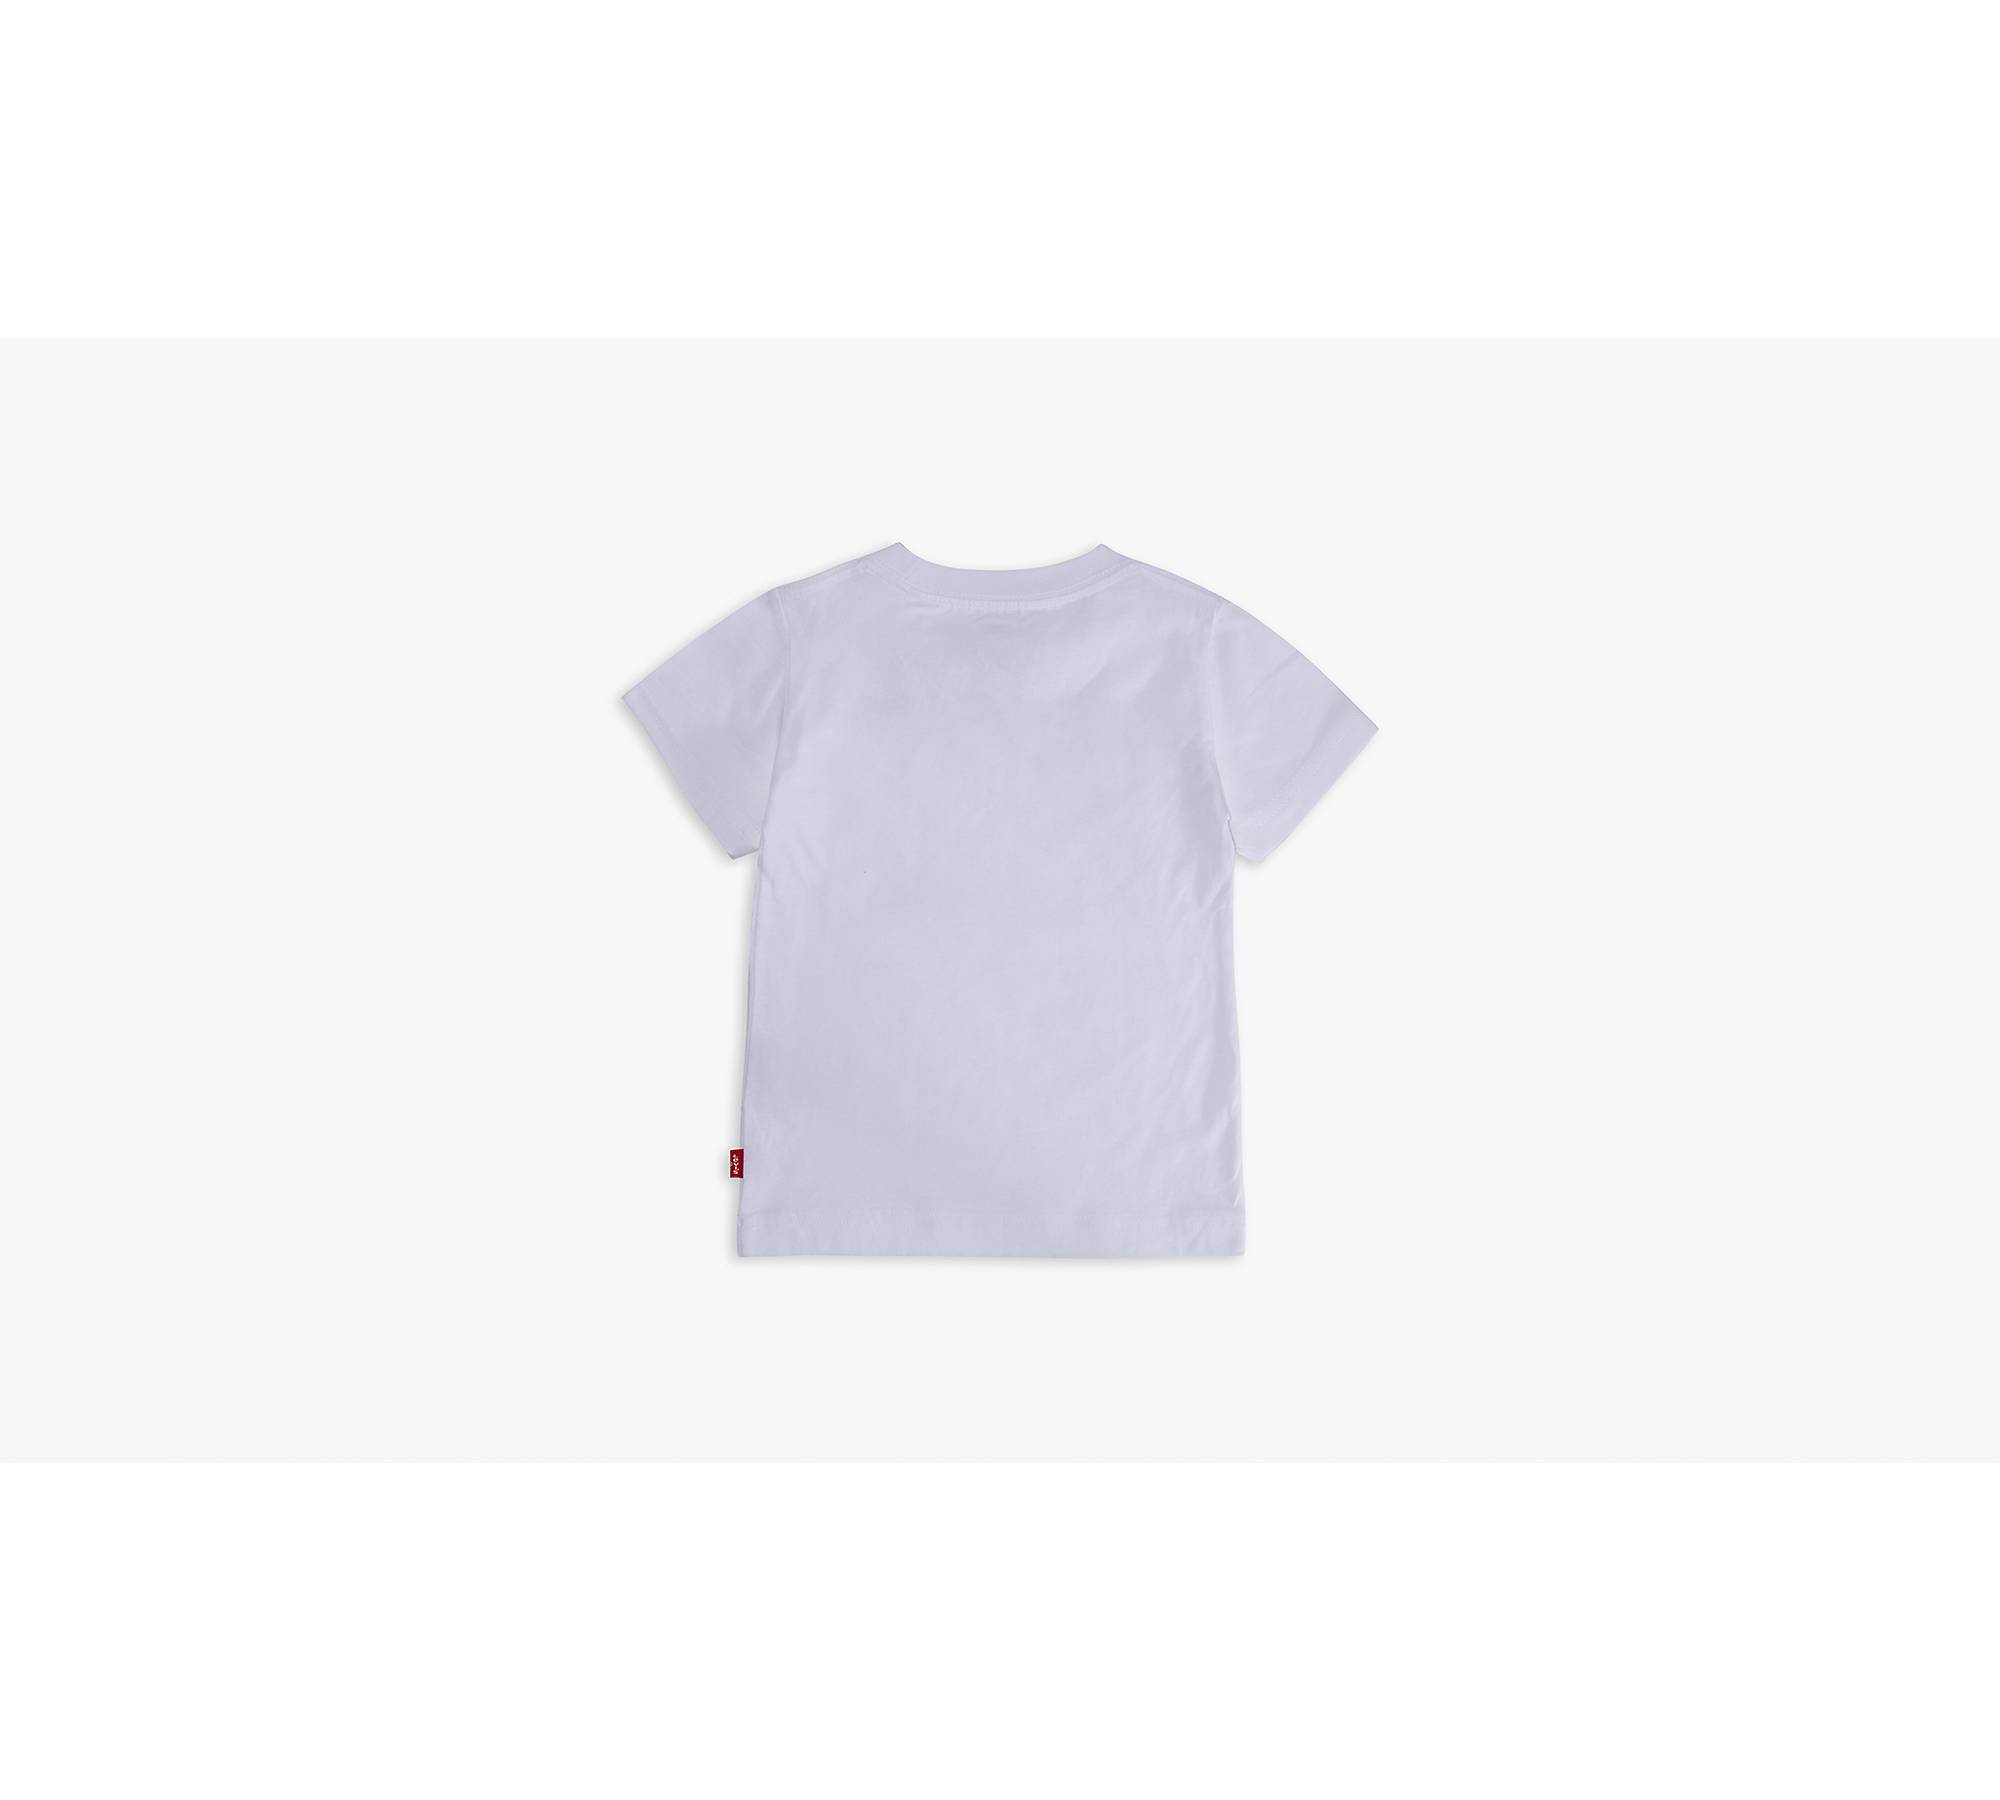 Toddler Boys 2t-4t Levi’s® Serif Tee Shirt - White | Levi's® US